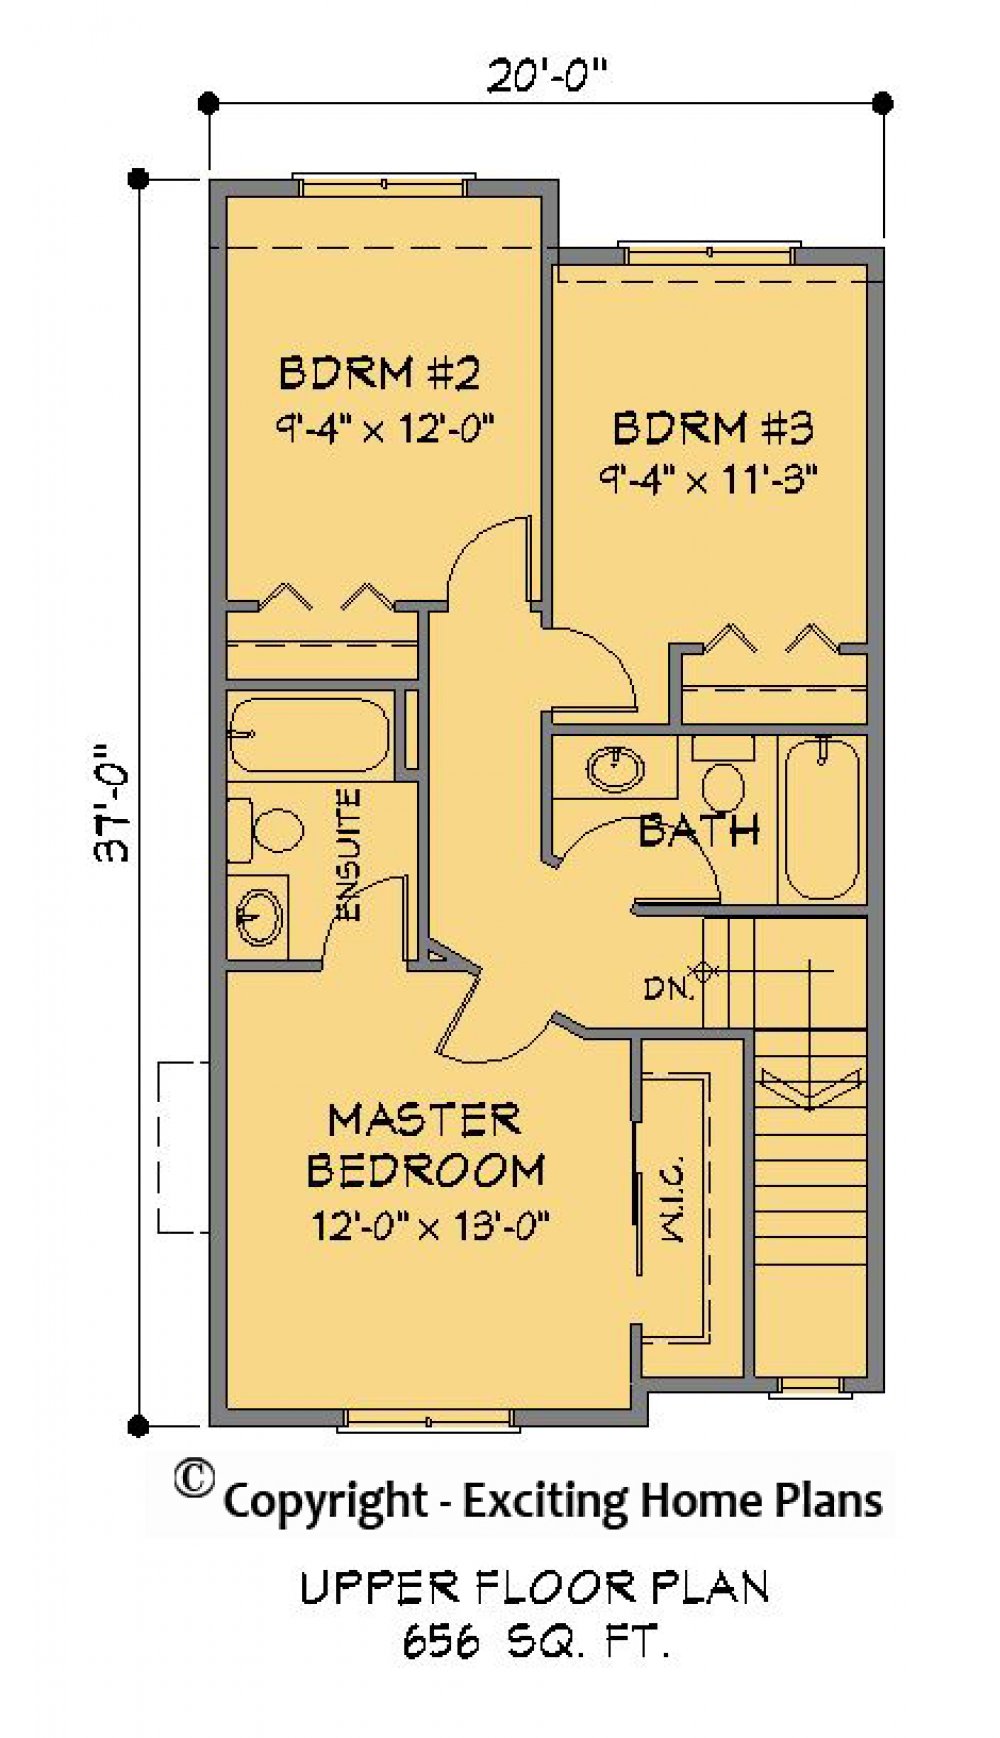 House Plan E1269-10 Upper Floor Plan